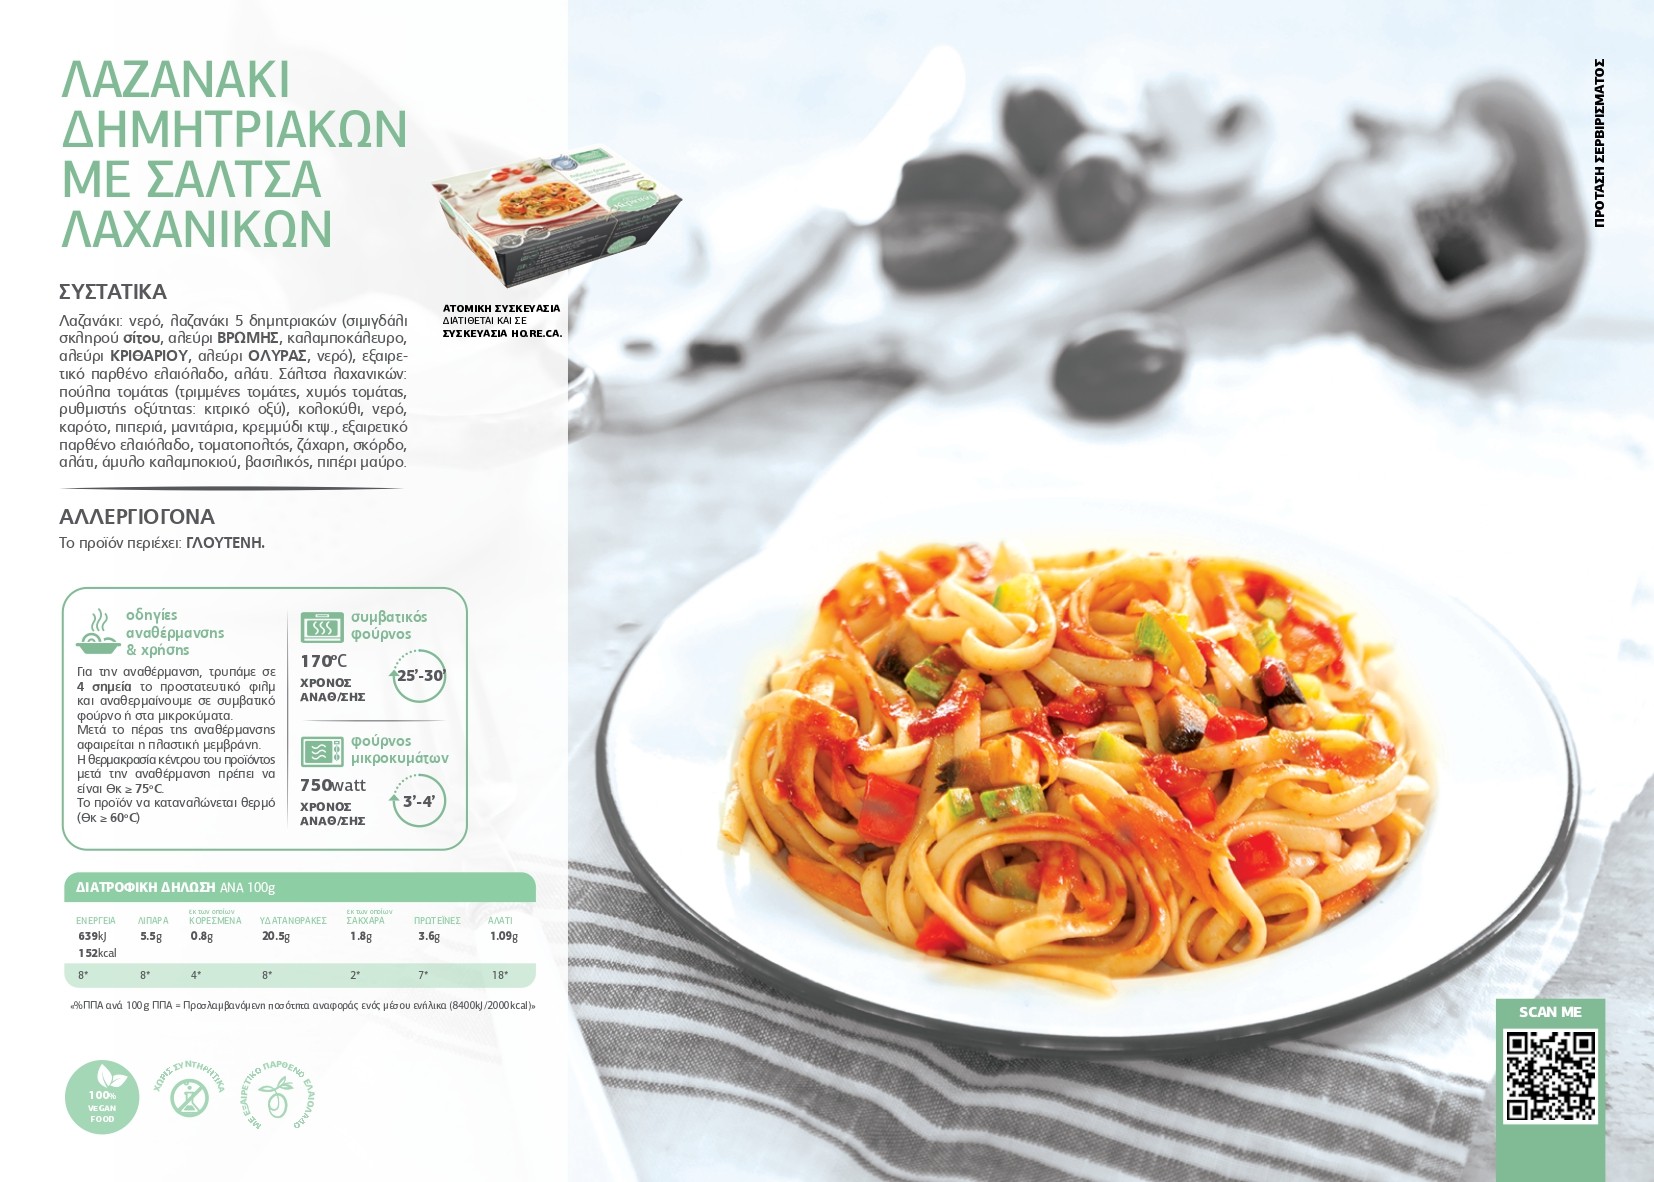 ΣΚ - Λαζανάκι δημητριακών με σάλτσα λαχανικών pdf image